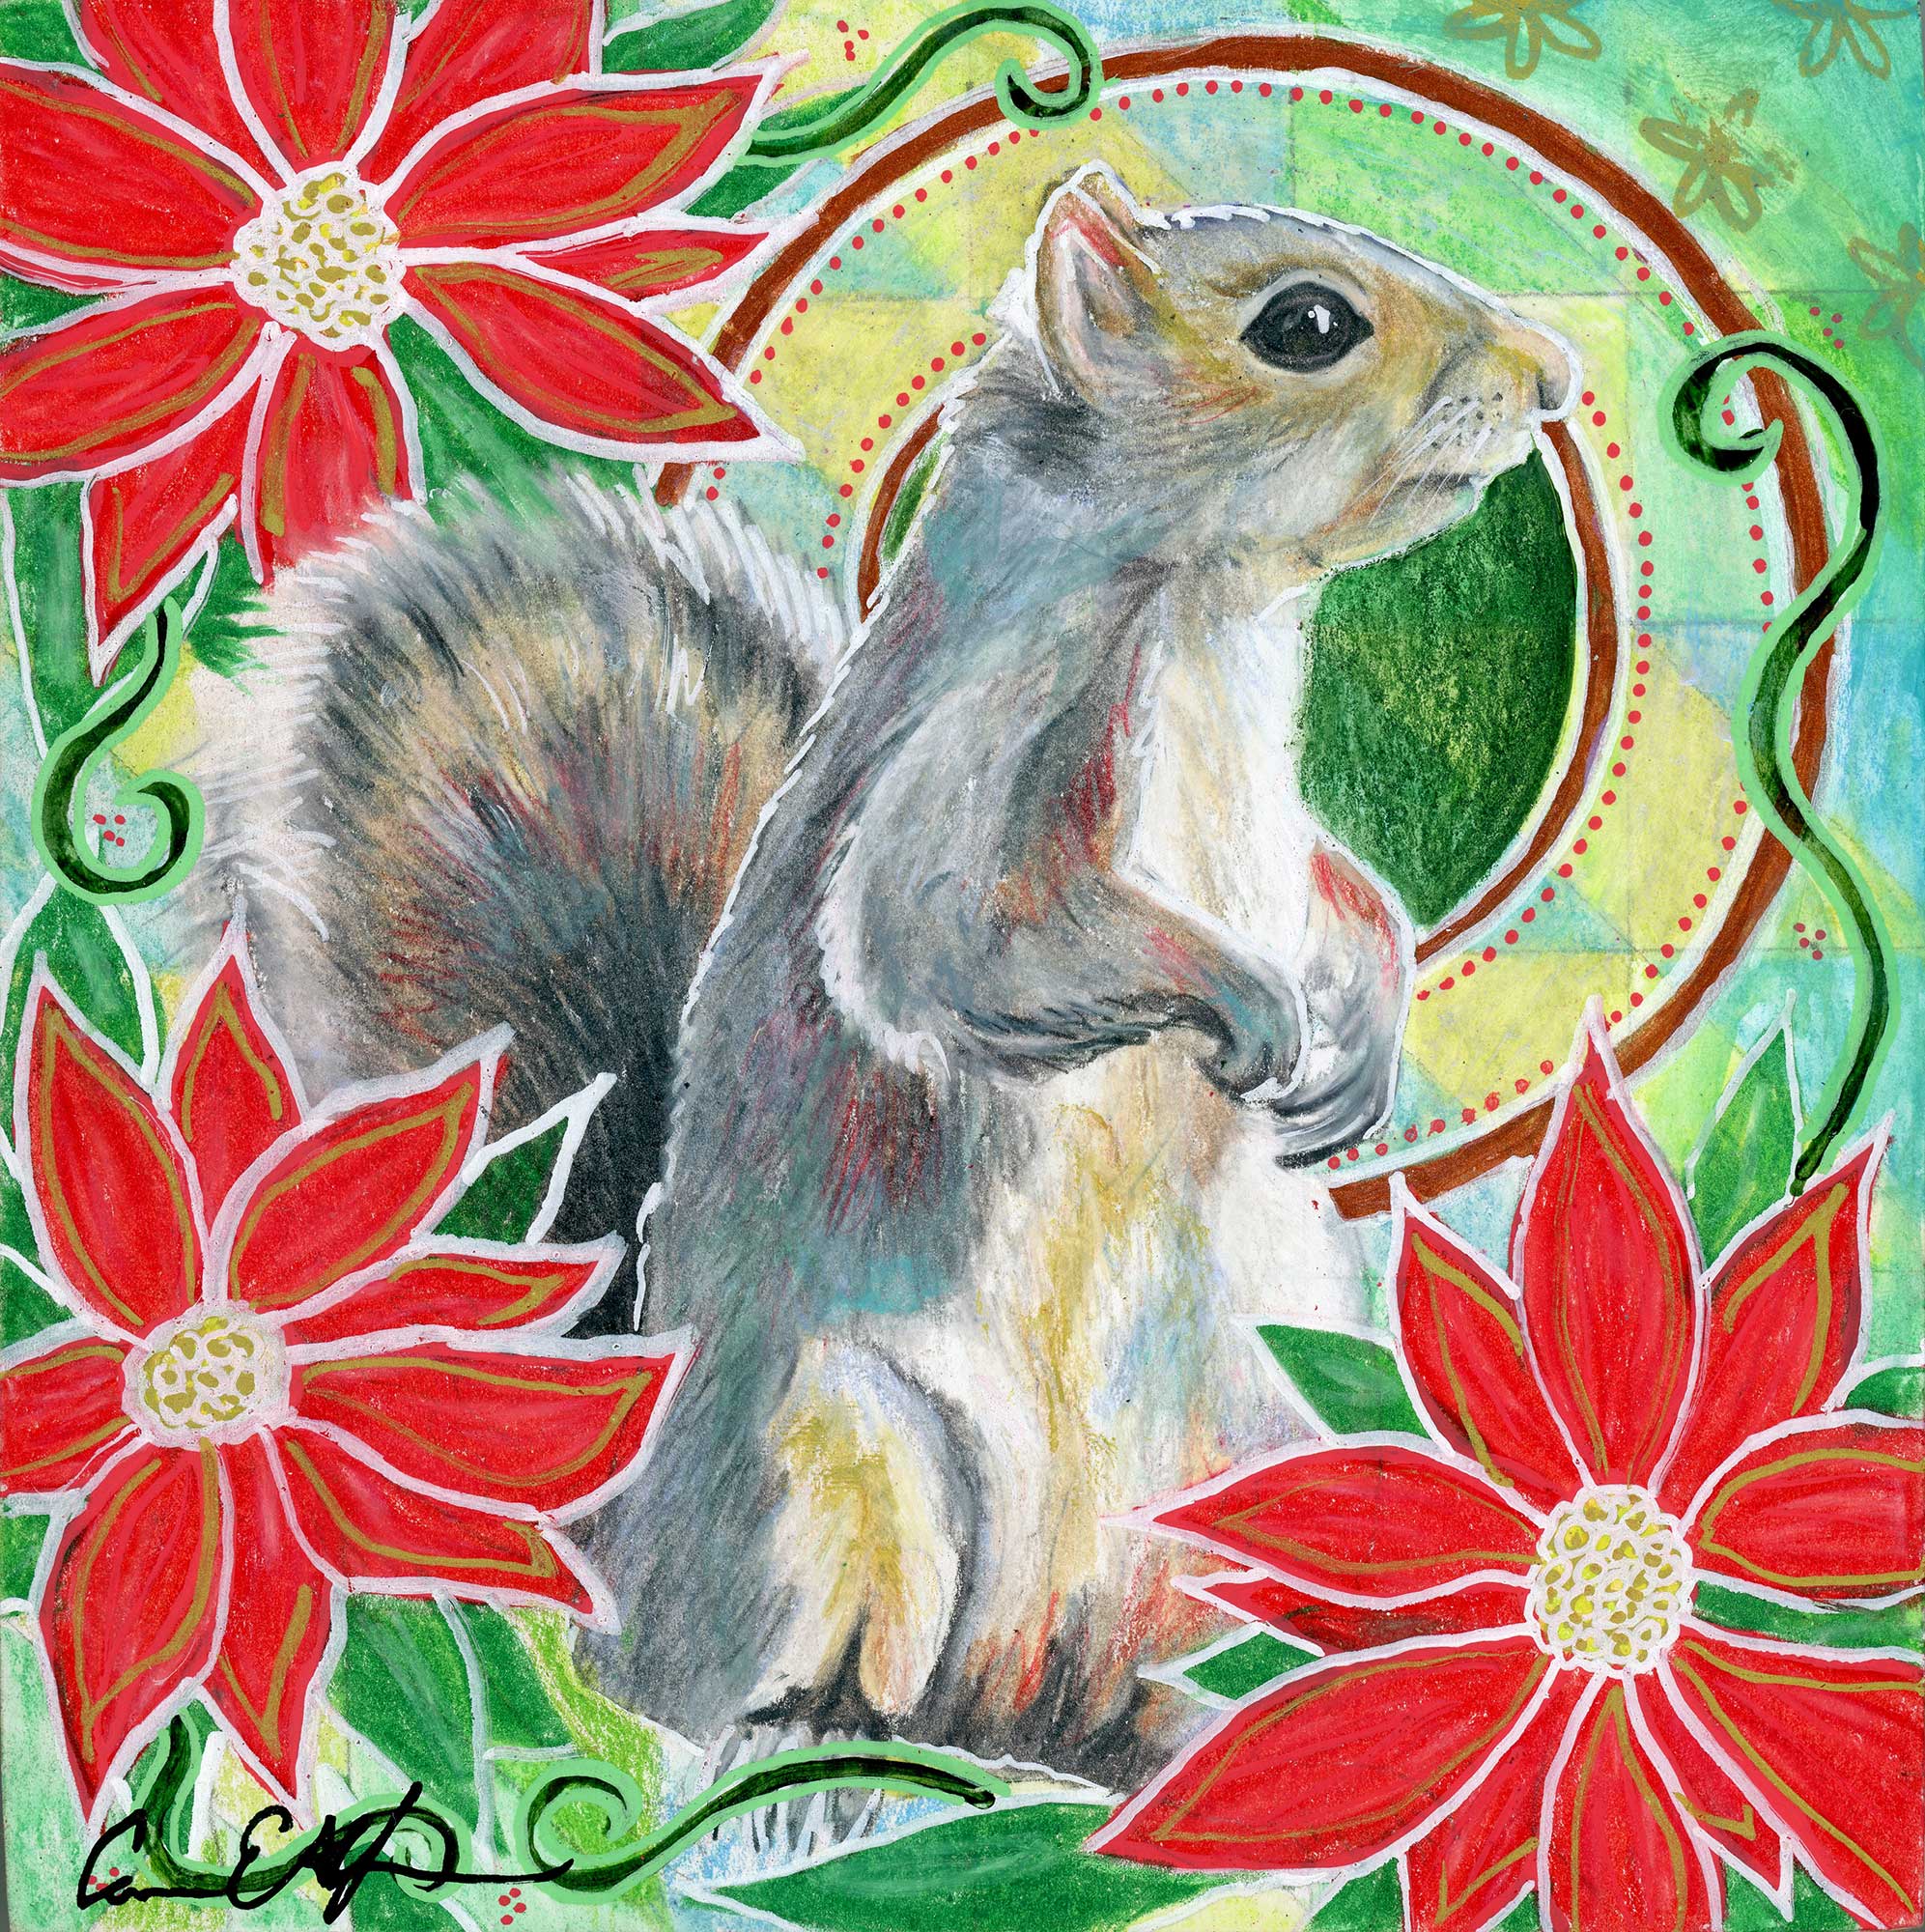 "Squirrel in Poinsettias", 6" x 6", mixed media